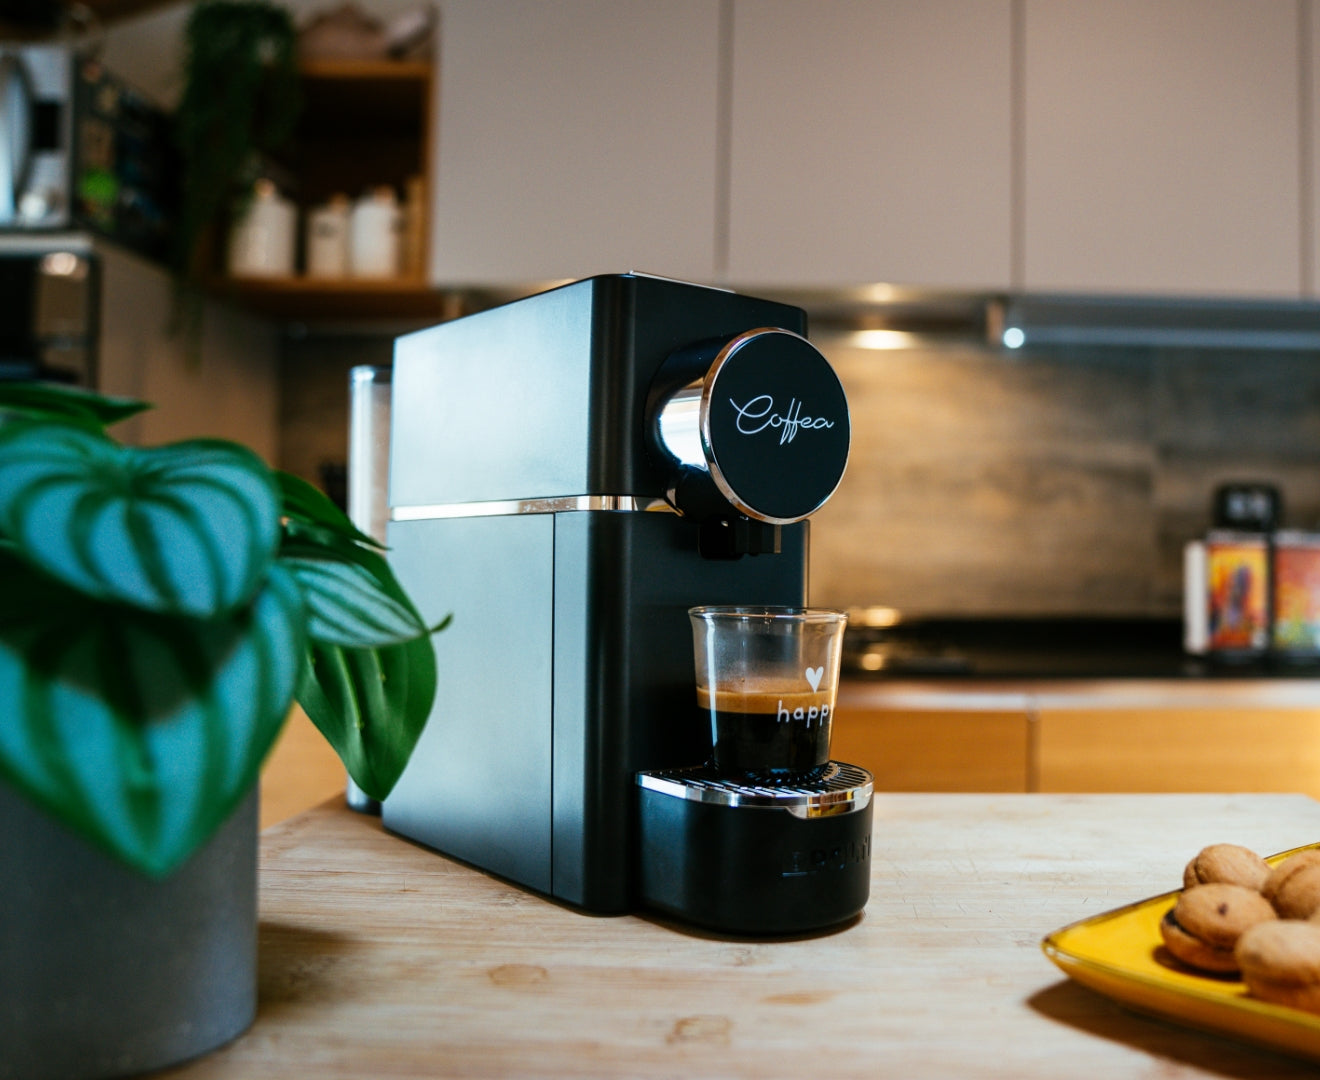 L'immagine mostra un macchina del caffè in cucina